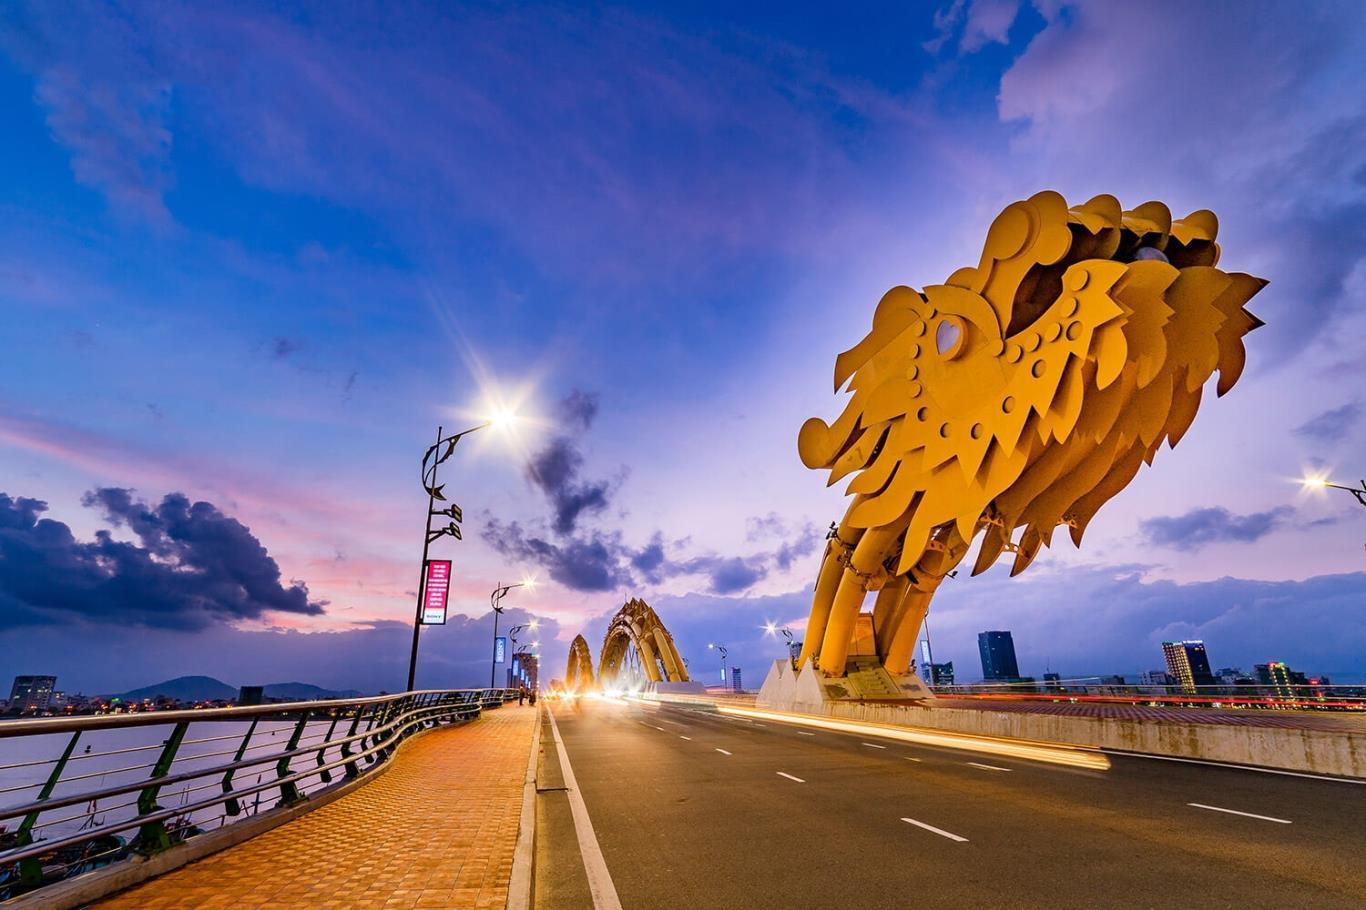 Kinh nghiệm check-in Cầu Rồng Đà Nẵng - 1 trong 20 cây cầu ấn tượng nhất thế giới 4